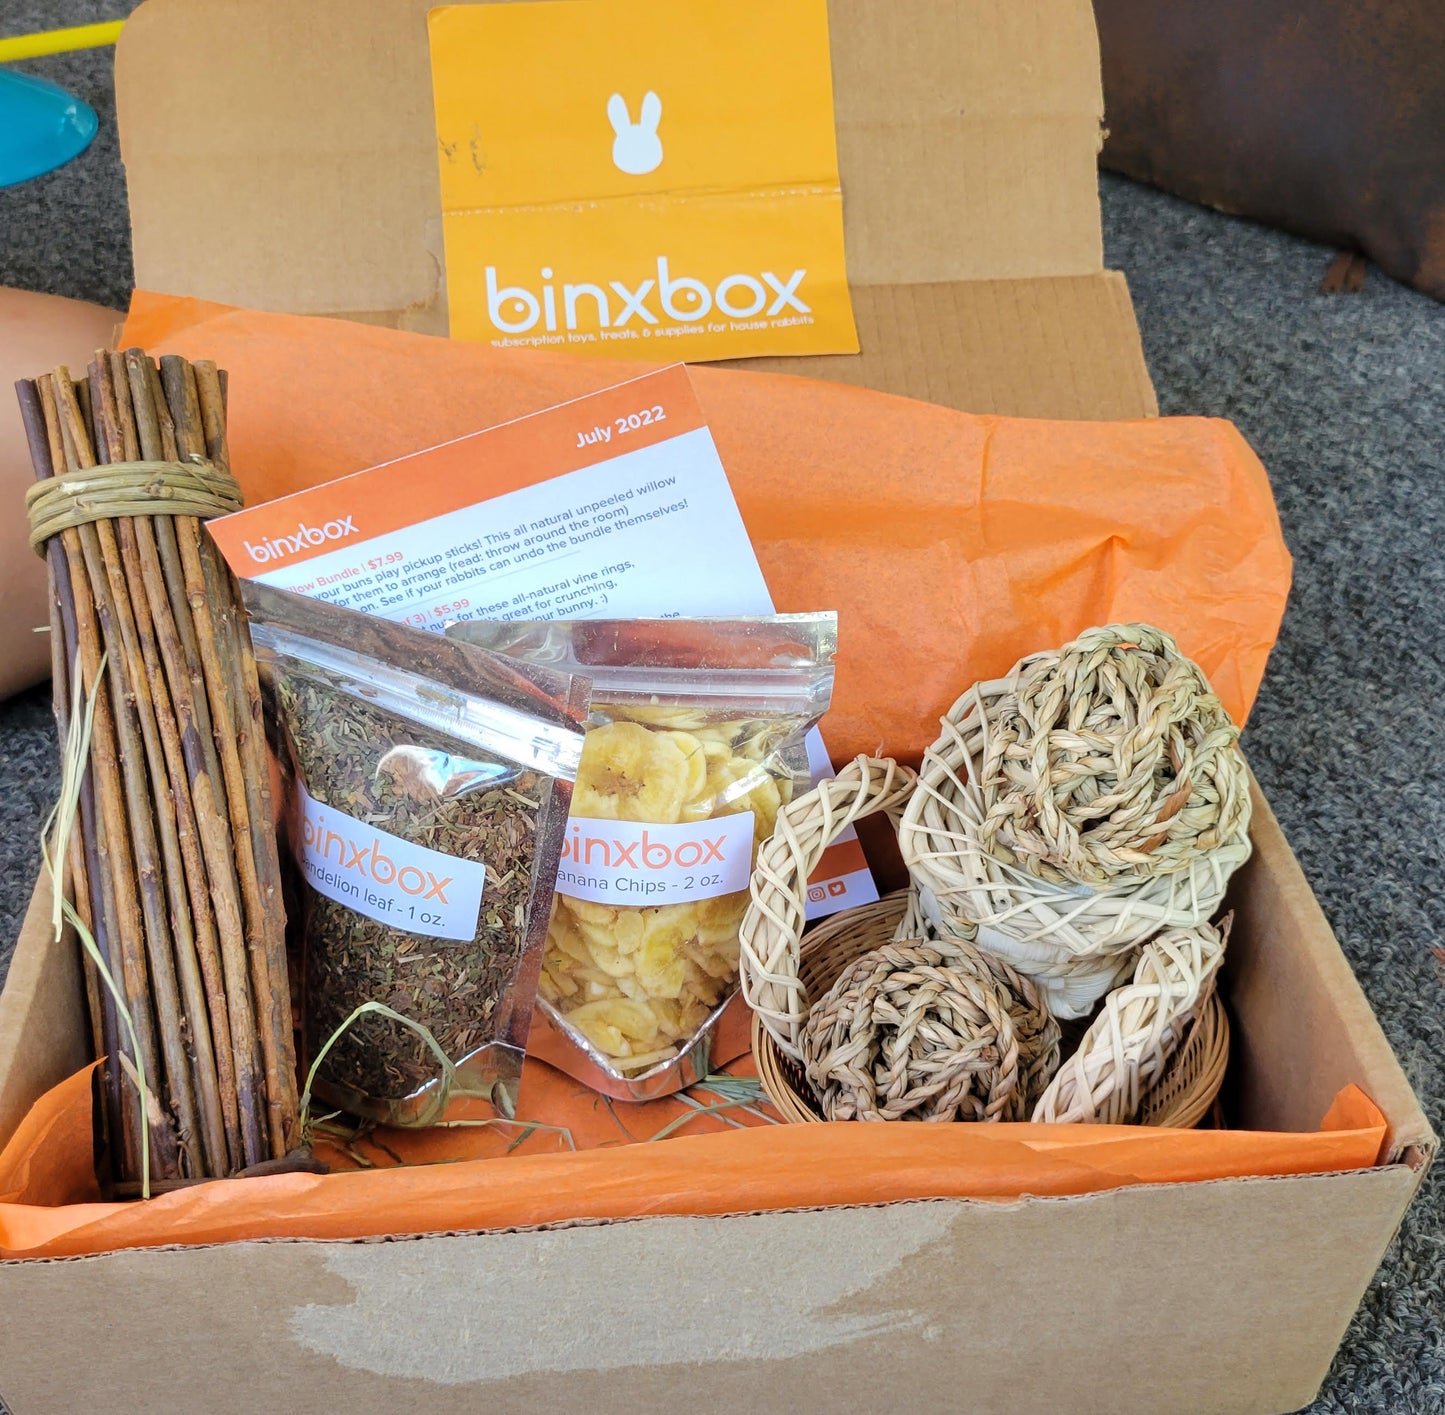 BinxBox Subscription